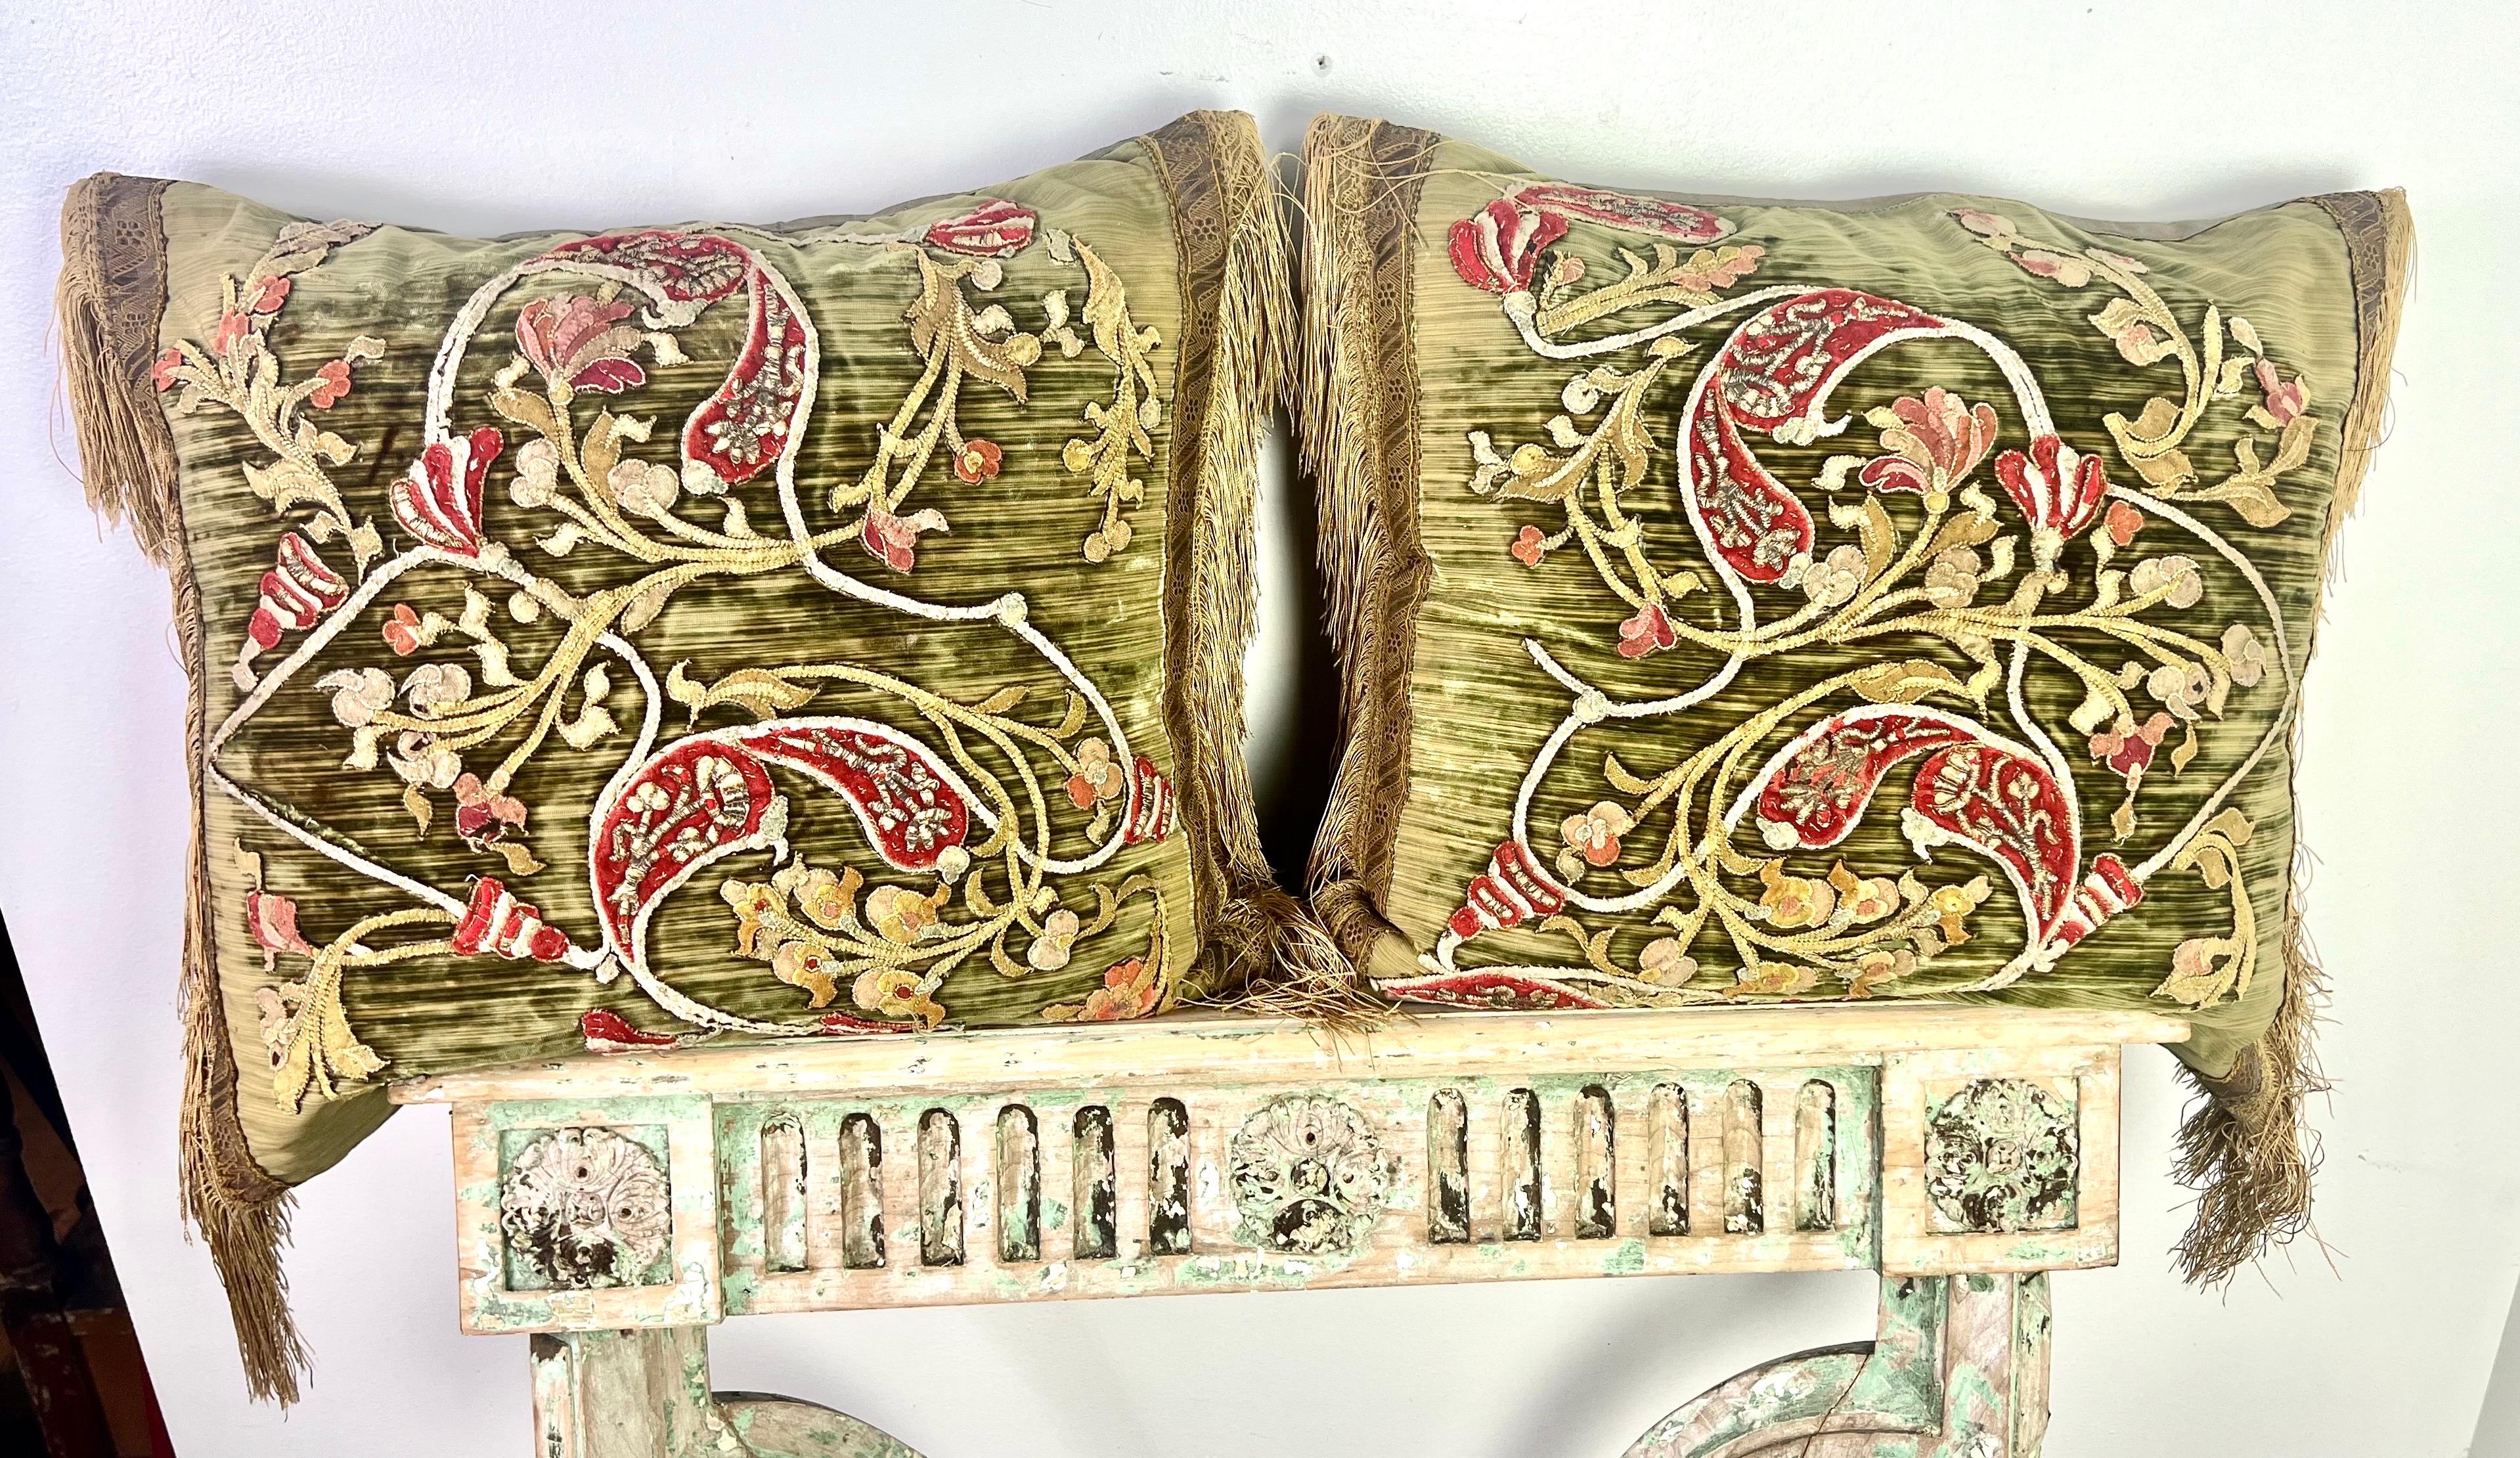 Une paire de coussins uniques et complexes, mêlant des éléments de différents siècles.  La combinaison de velours italien appliqué du XVIIIe siècle et de rubans métalliques dorés et de garnitures en soie du XIXe siècle crée une esthétique